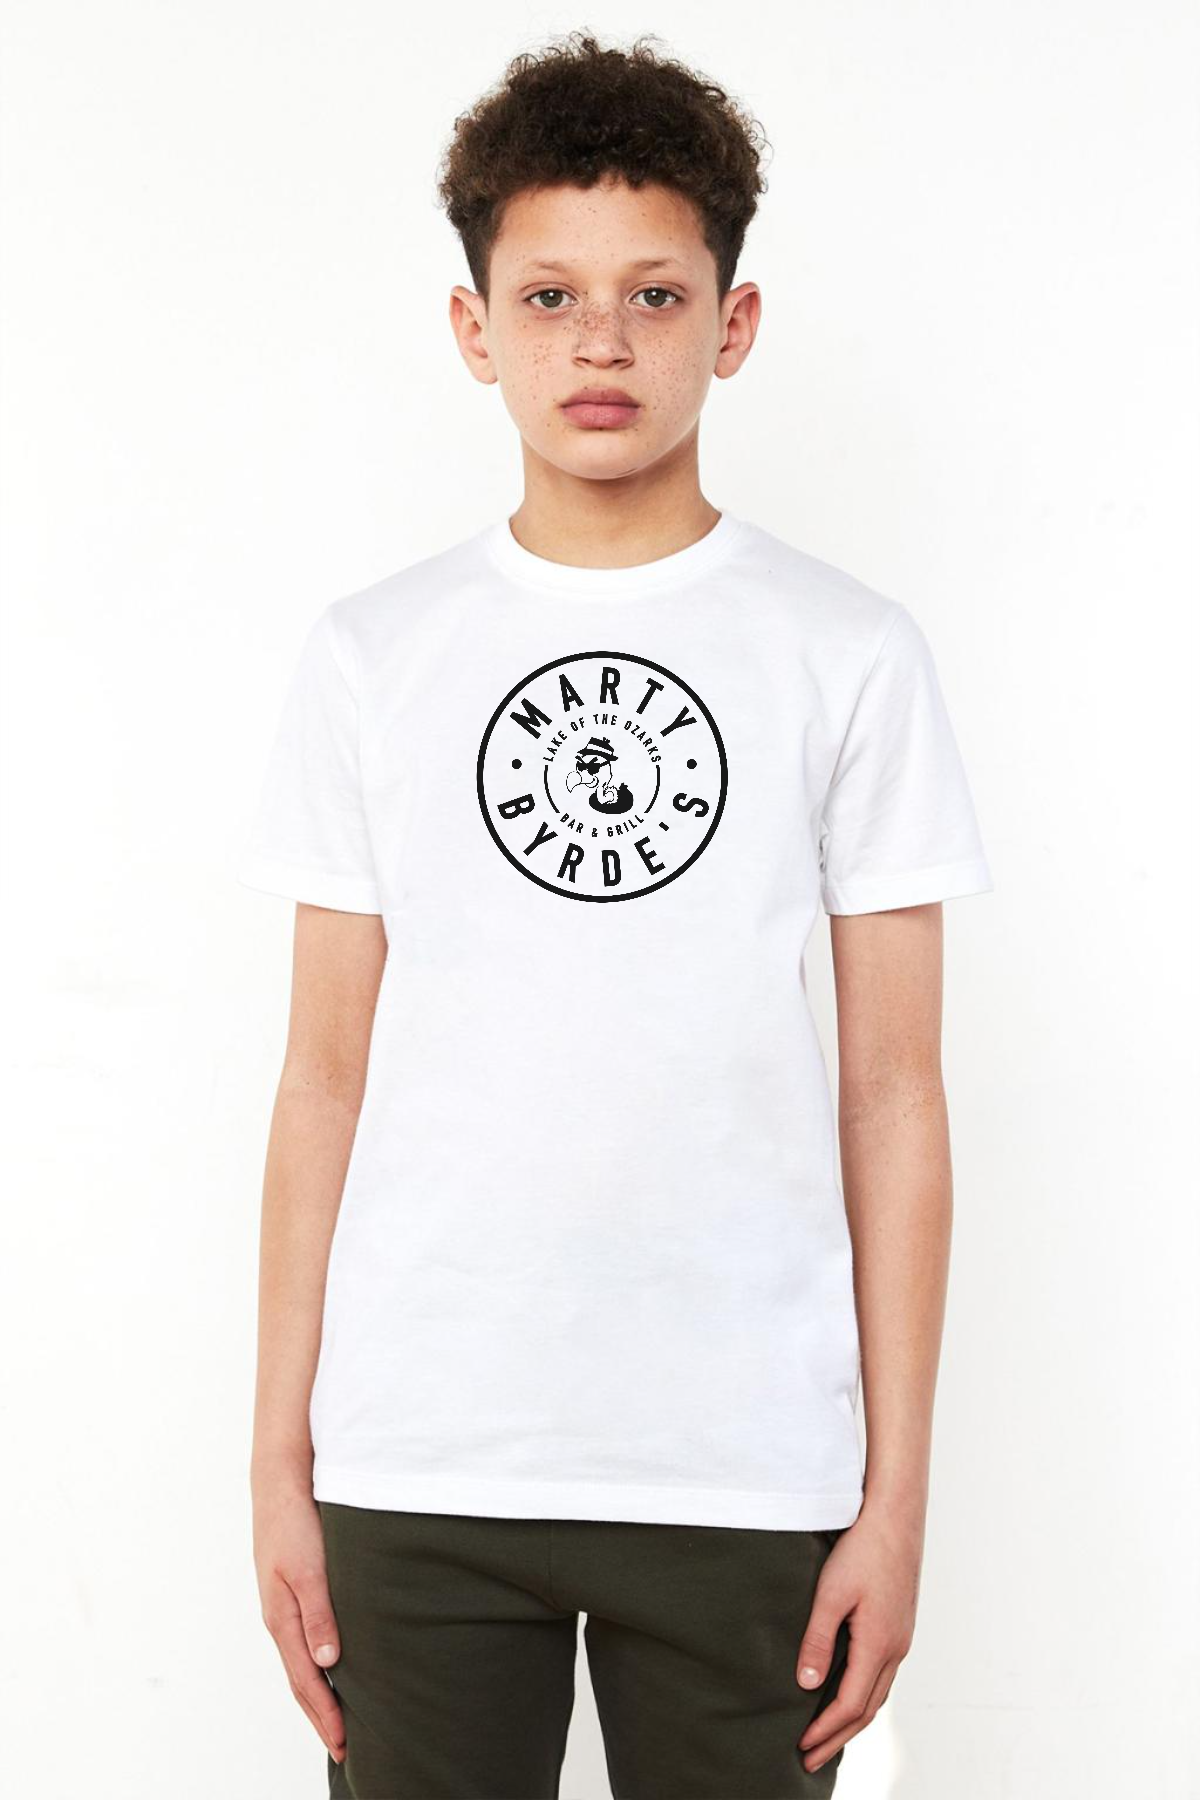 Ozark Marty Byrdes Logo Beyaz Çocuk Bisikletyaka Tshirt